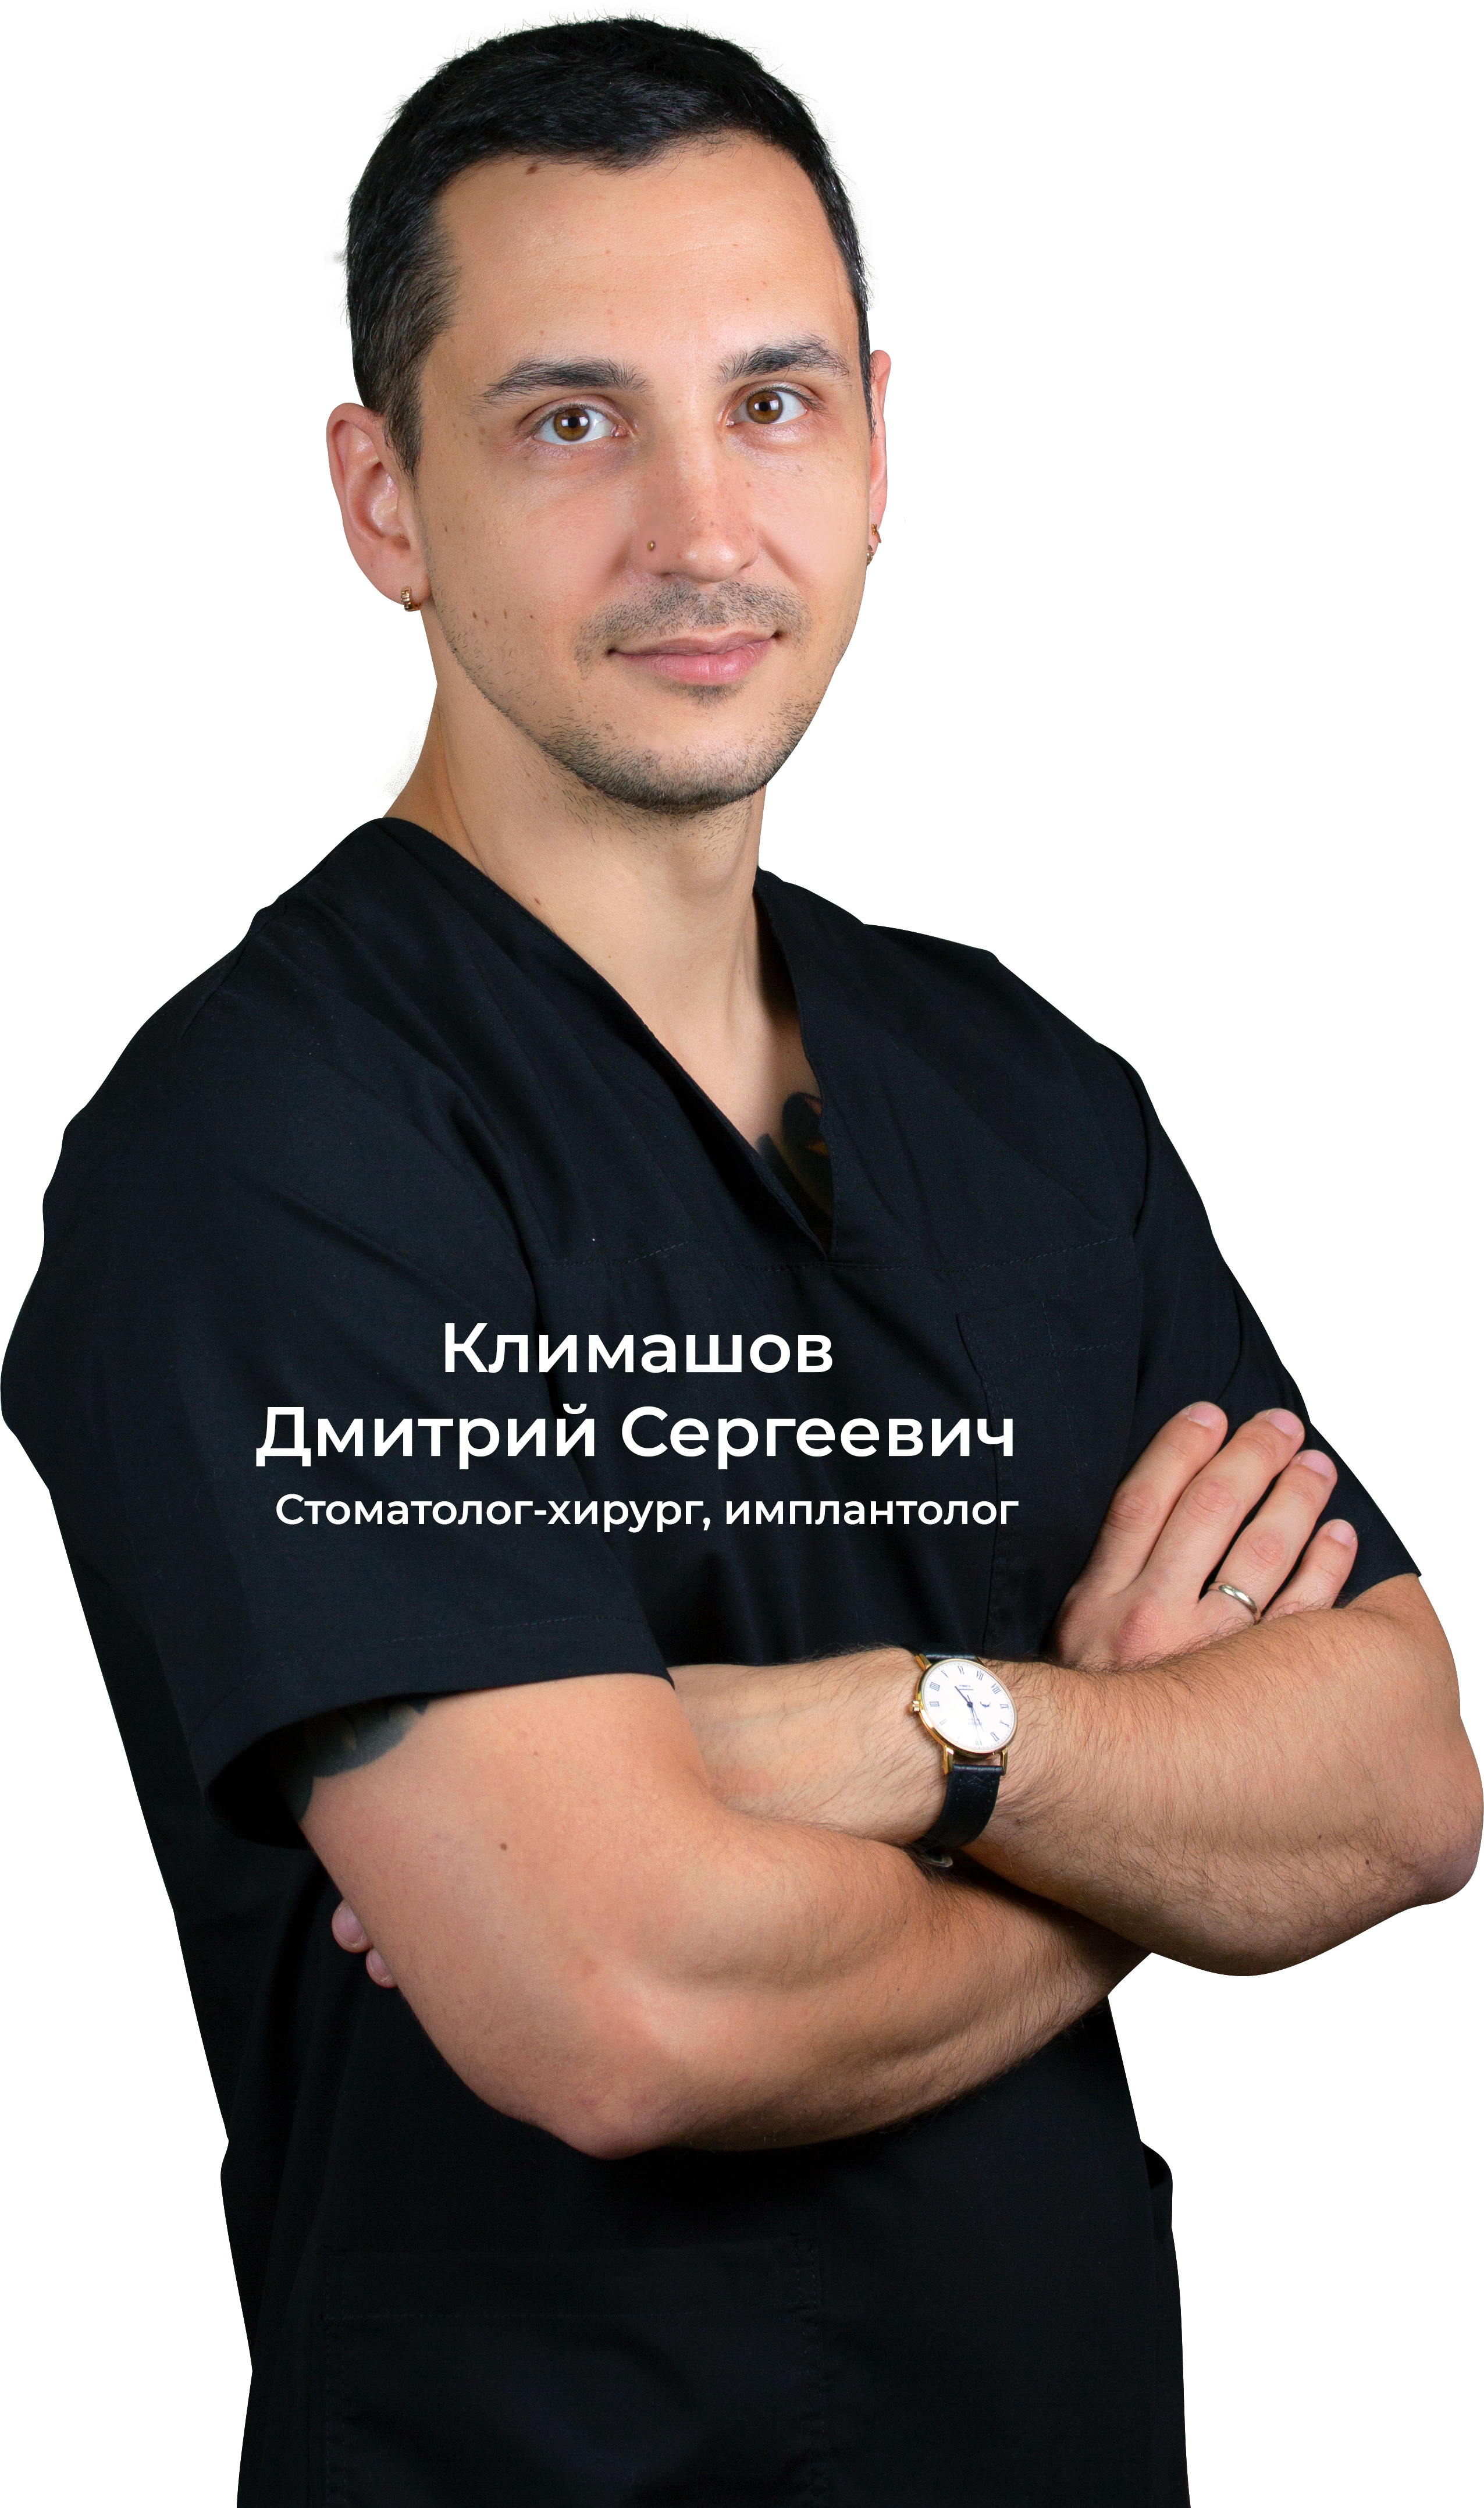 Климашов Дмитрий Сергеевич - стоматолог-хирург, имплантолог